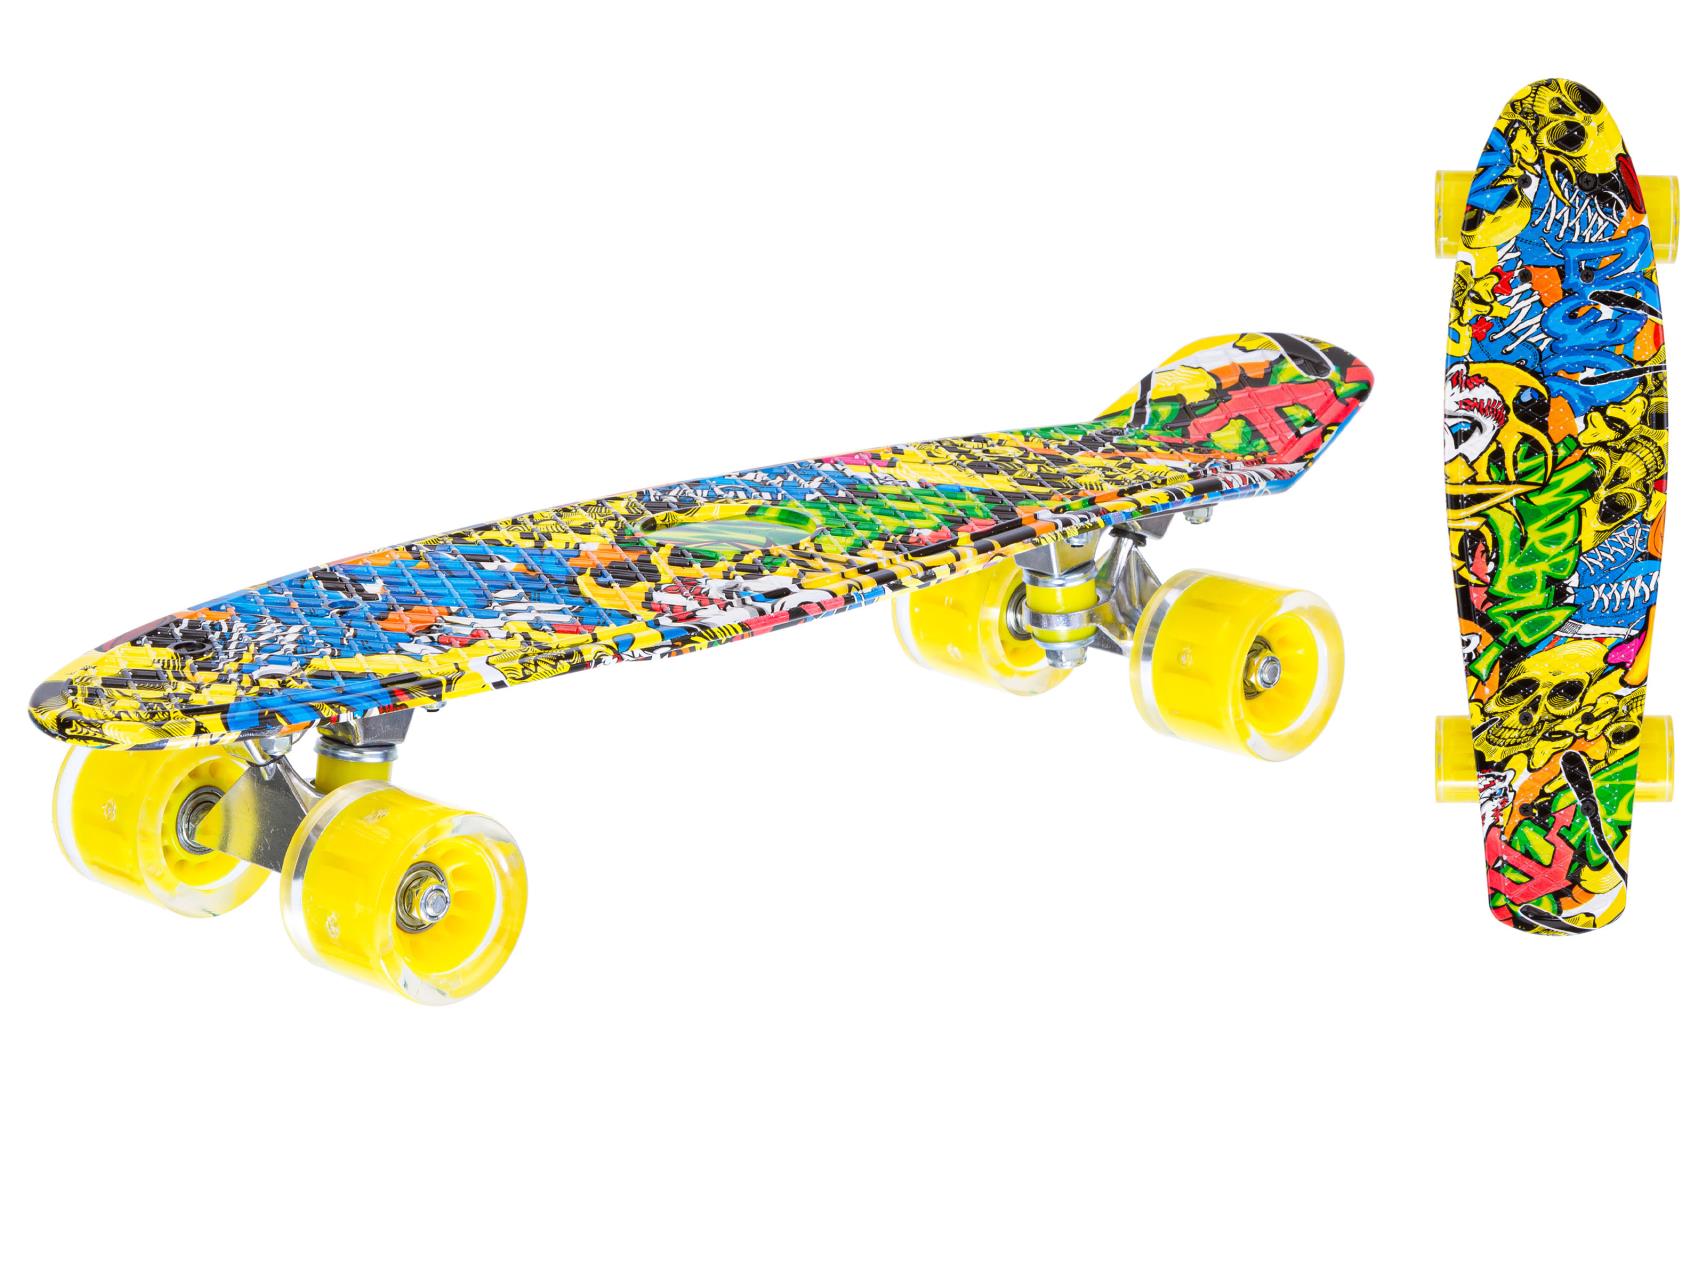 Скейтборд пластиковый с принтом, широкие колеса PU со светом, стойка: алюминиевая, желтый